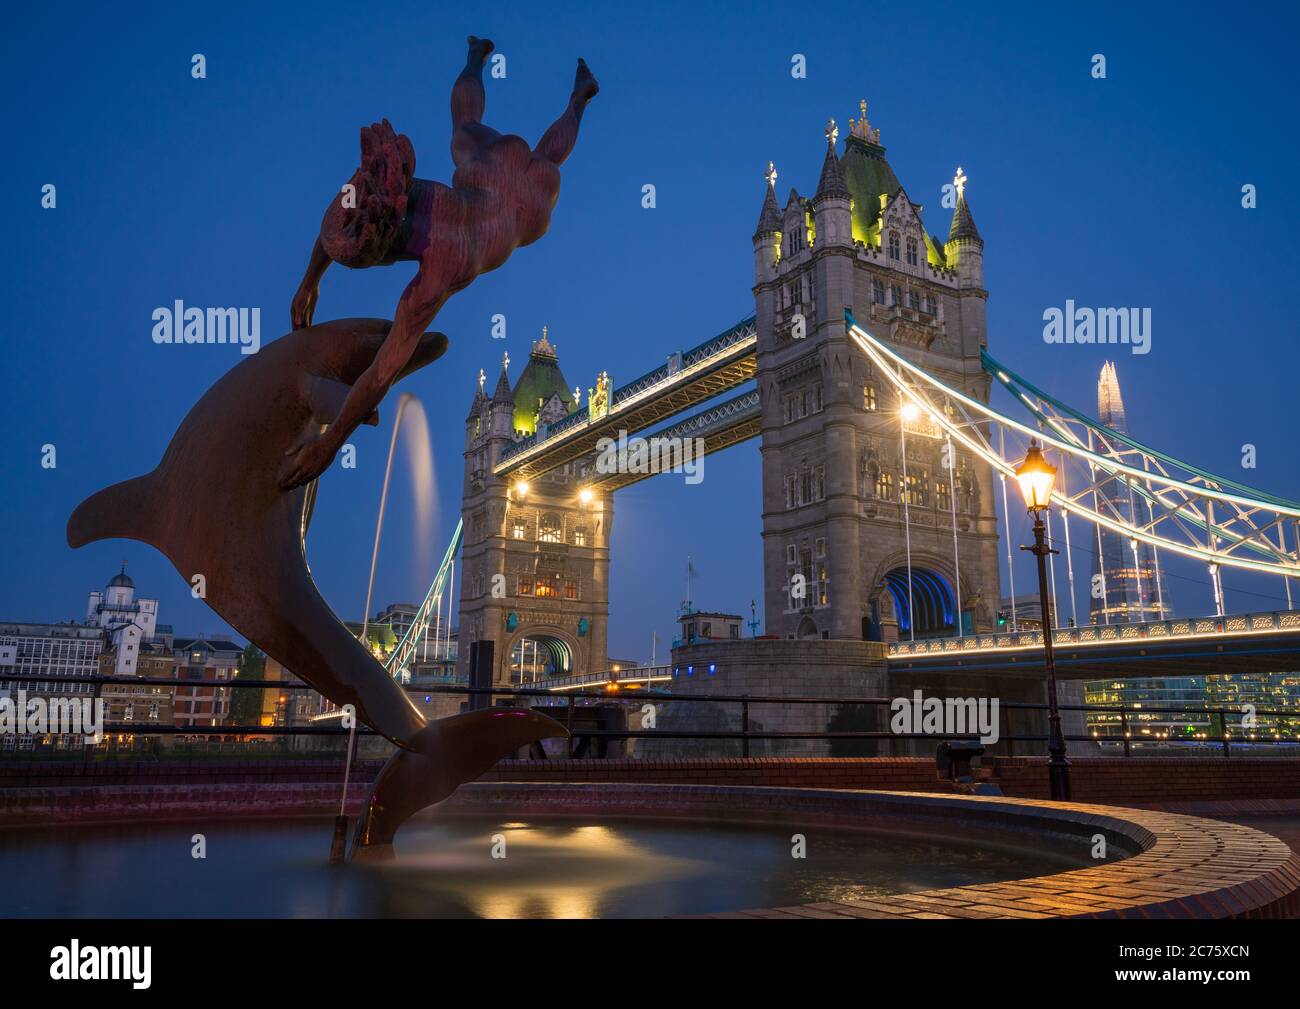 Das erste Licht des Morgens blaue Stunde beginnt das ikonische Mädchen mit einem Dolphin Fountain, Tower Bridge und der Shard in Central London zu beleuchten. Stockfoto